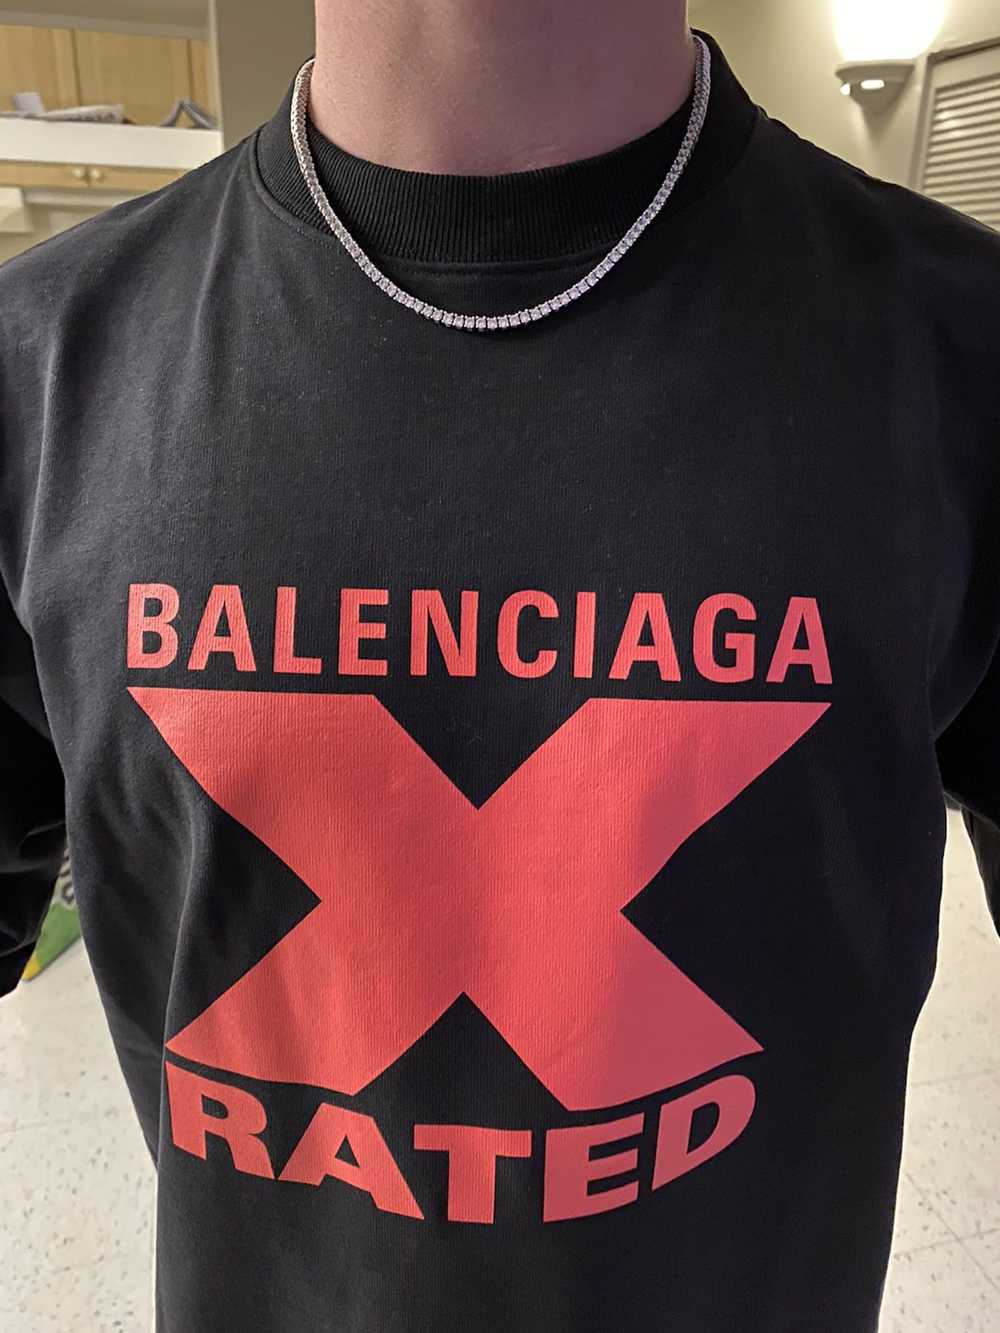 Balenciaga Balenciaga X Rated Tee 2020 - image 1